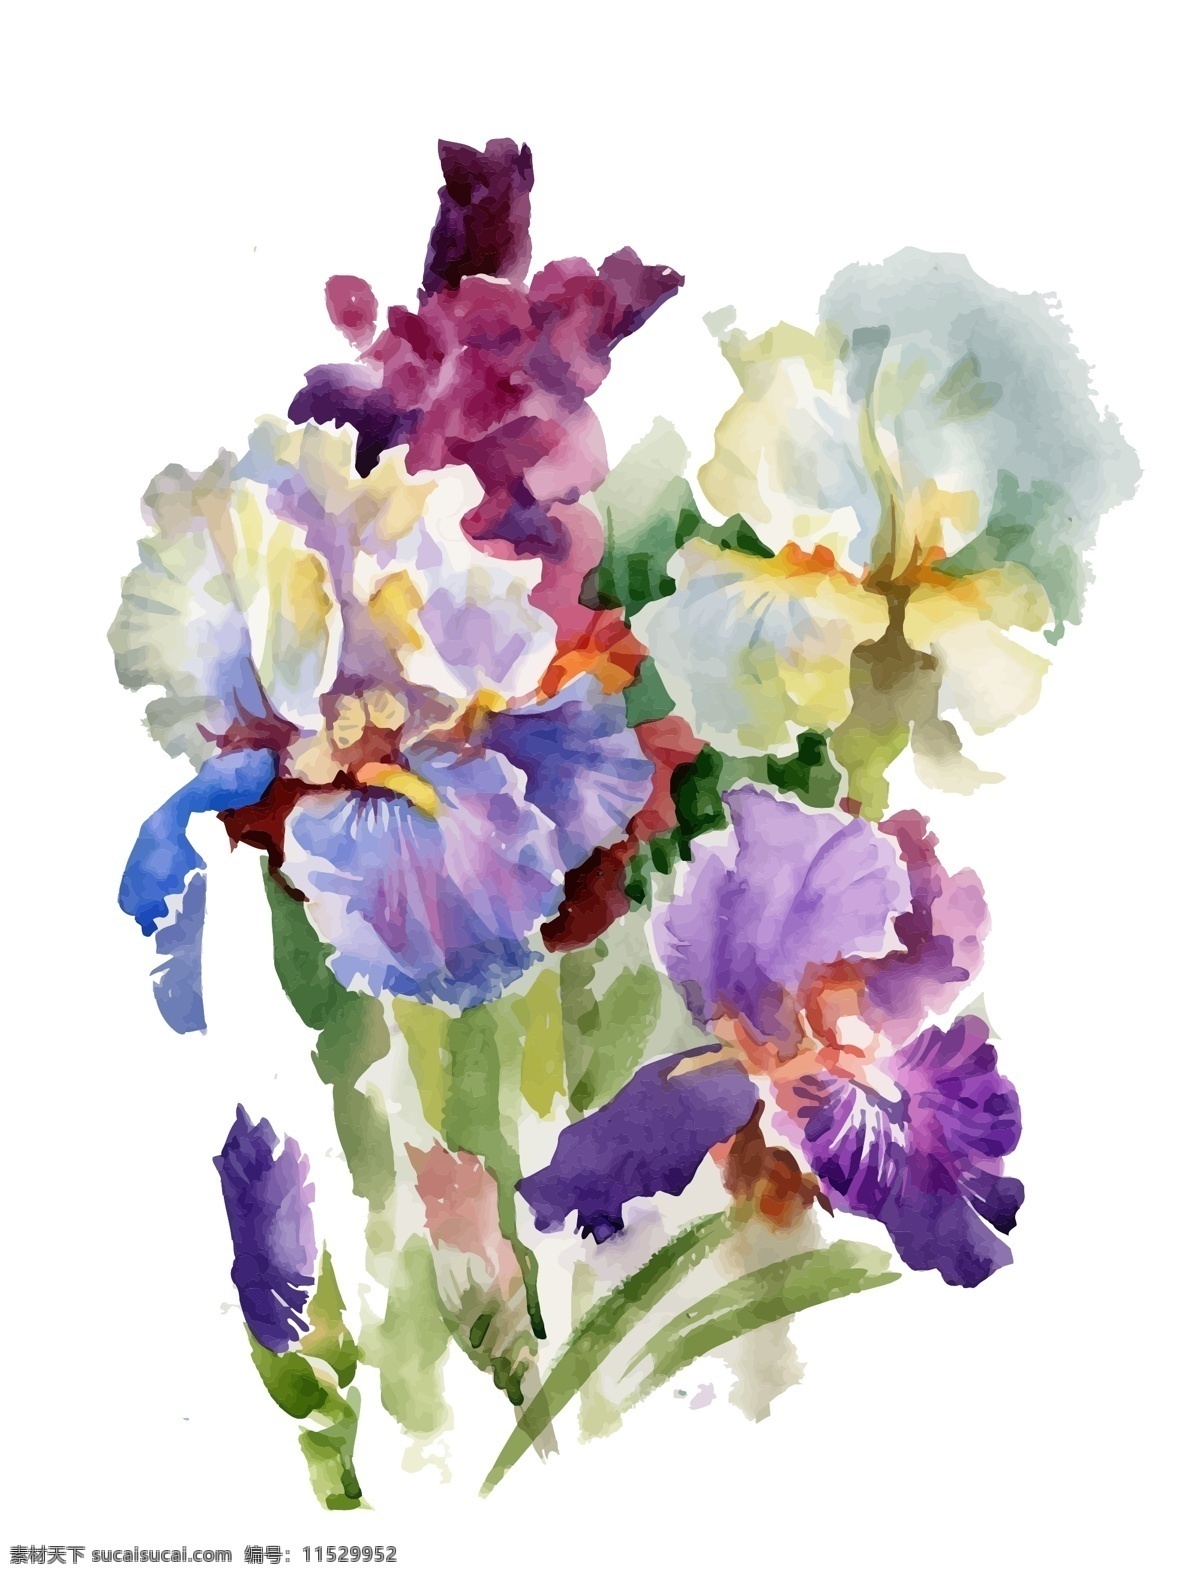 花束 蝴蝶兰 花朵 水彩 手绘 矢量 文件 紫色 水墨 夏天 中国风 国画 小花 鲜花 卡通 植物 装饰 印刷 高清